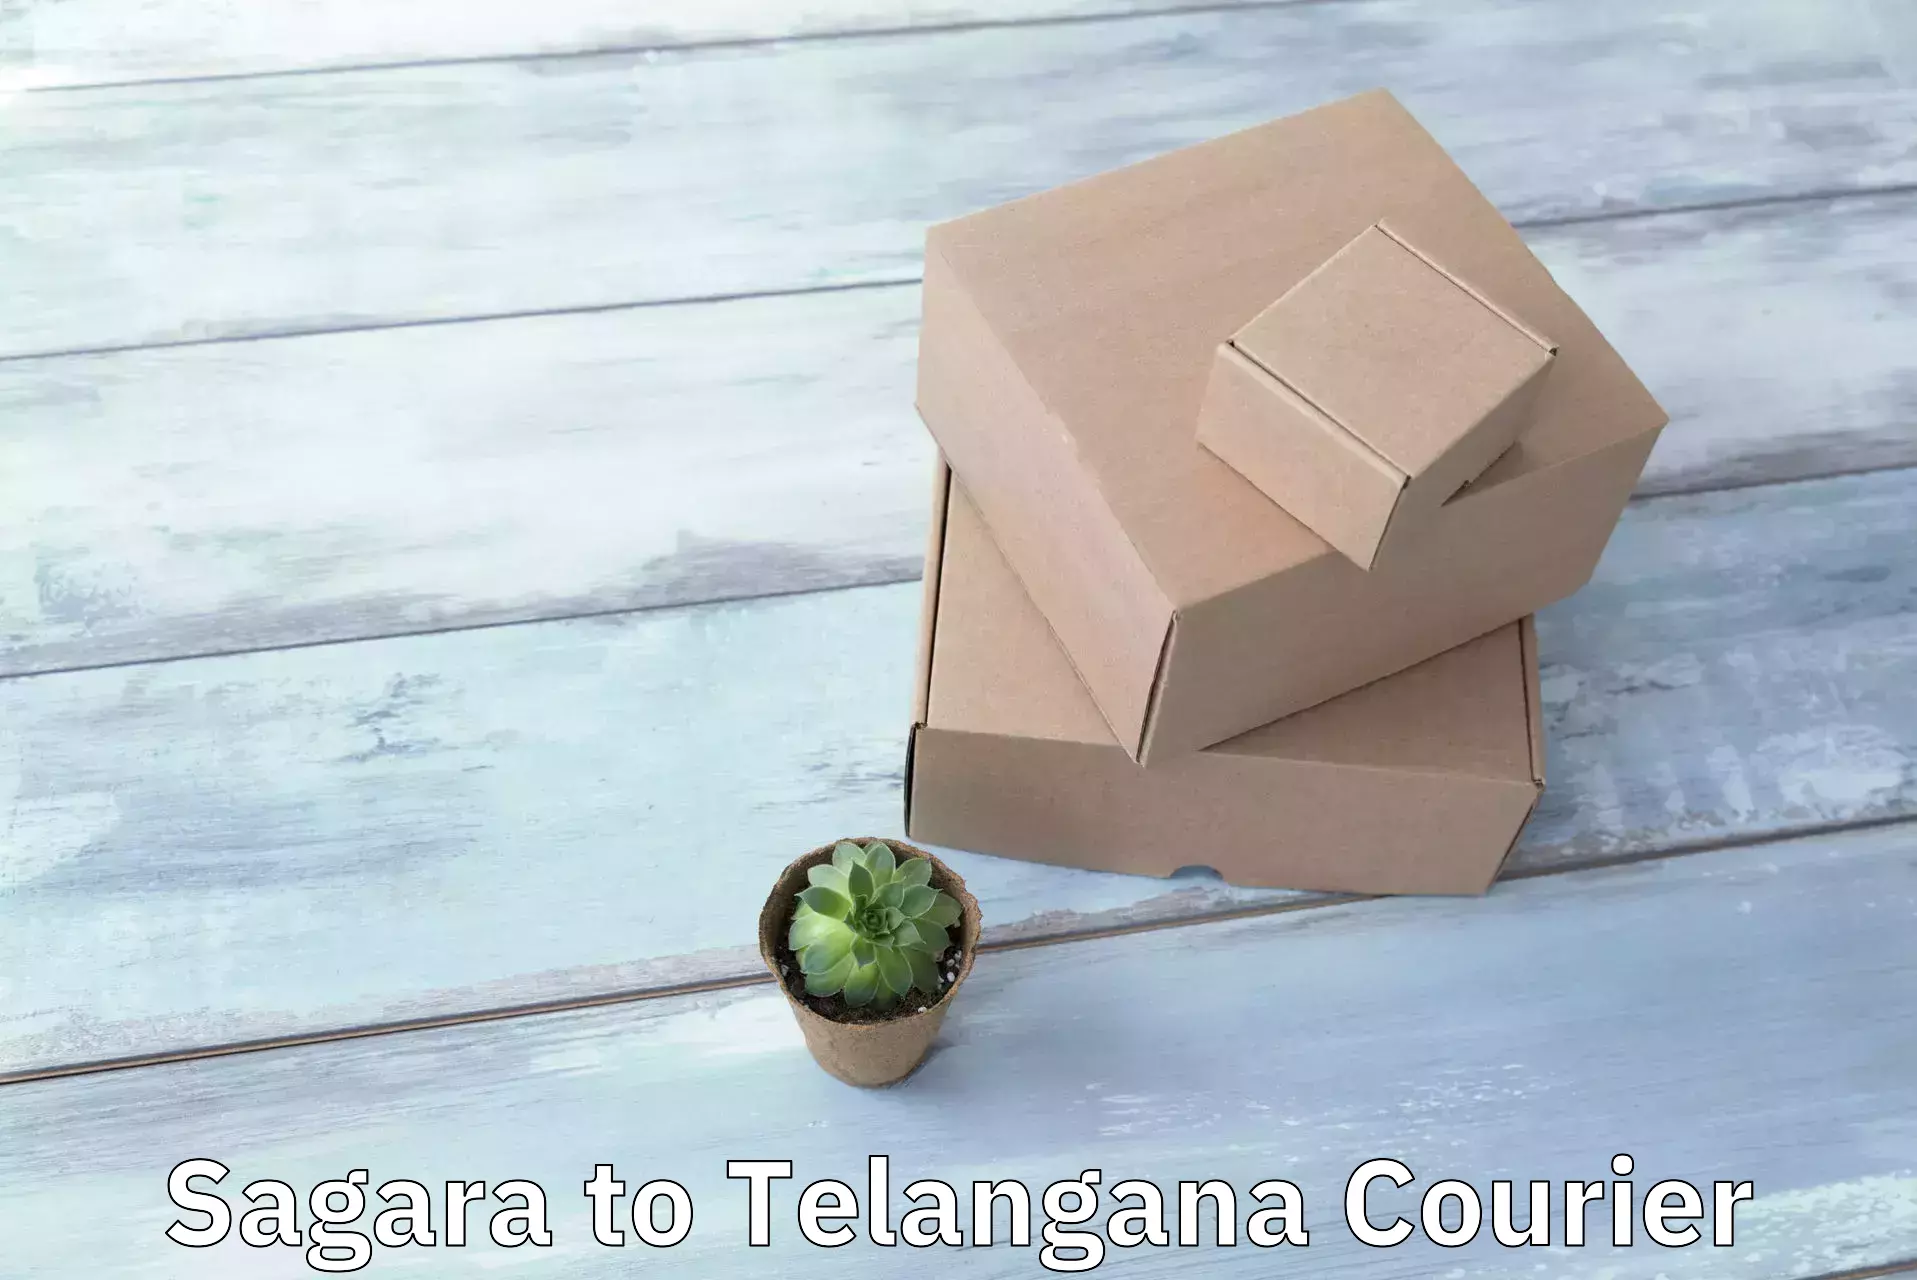 Trackable shipping service Sagara to Telangana